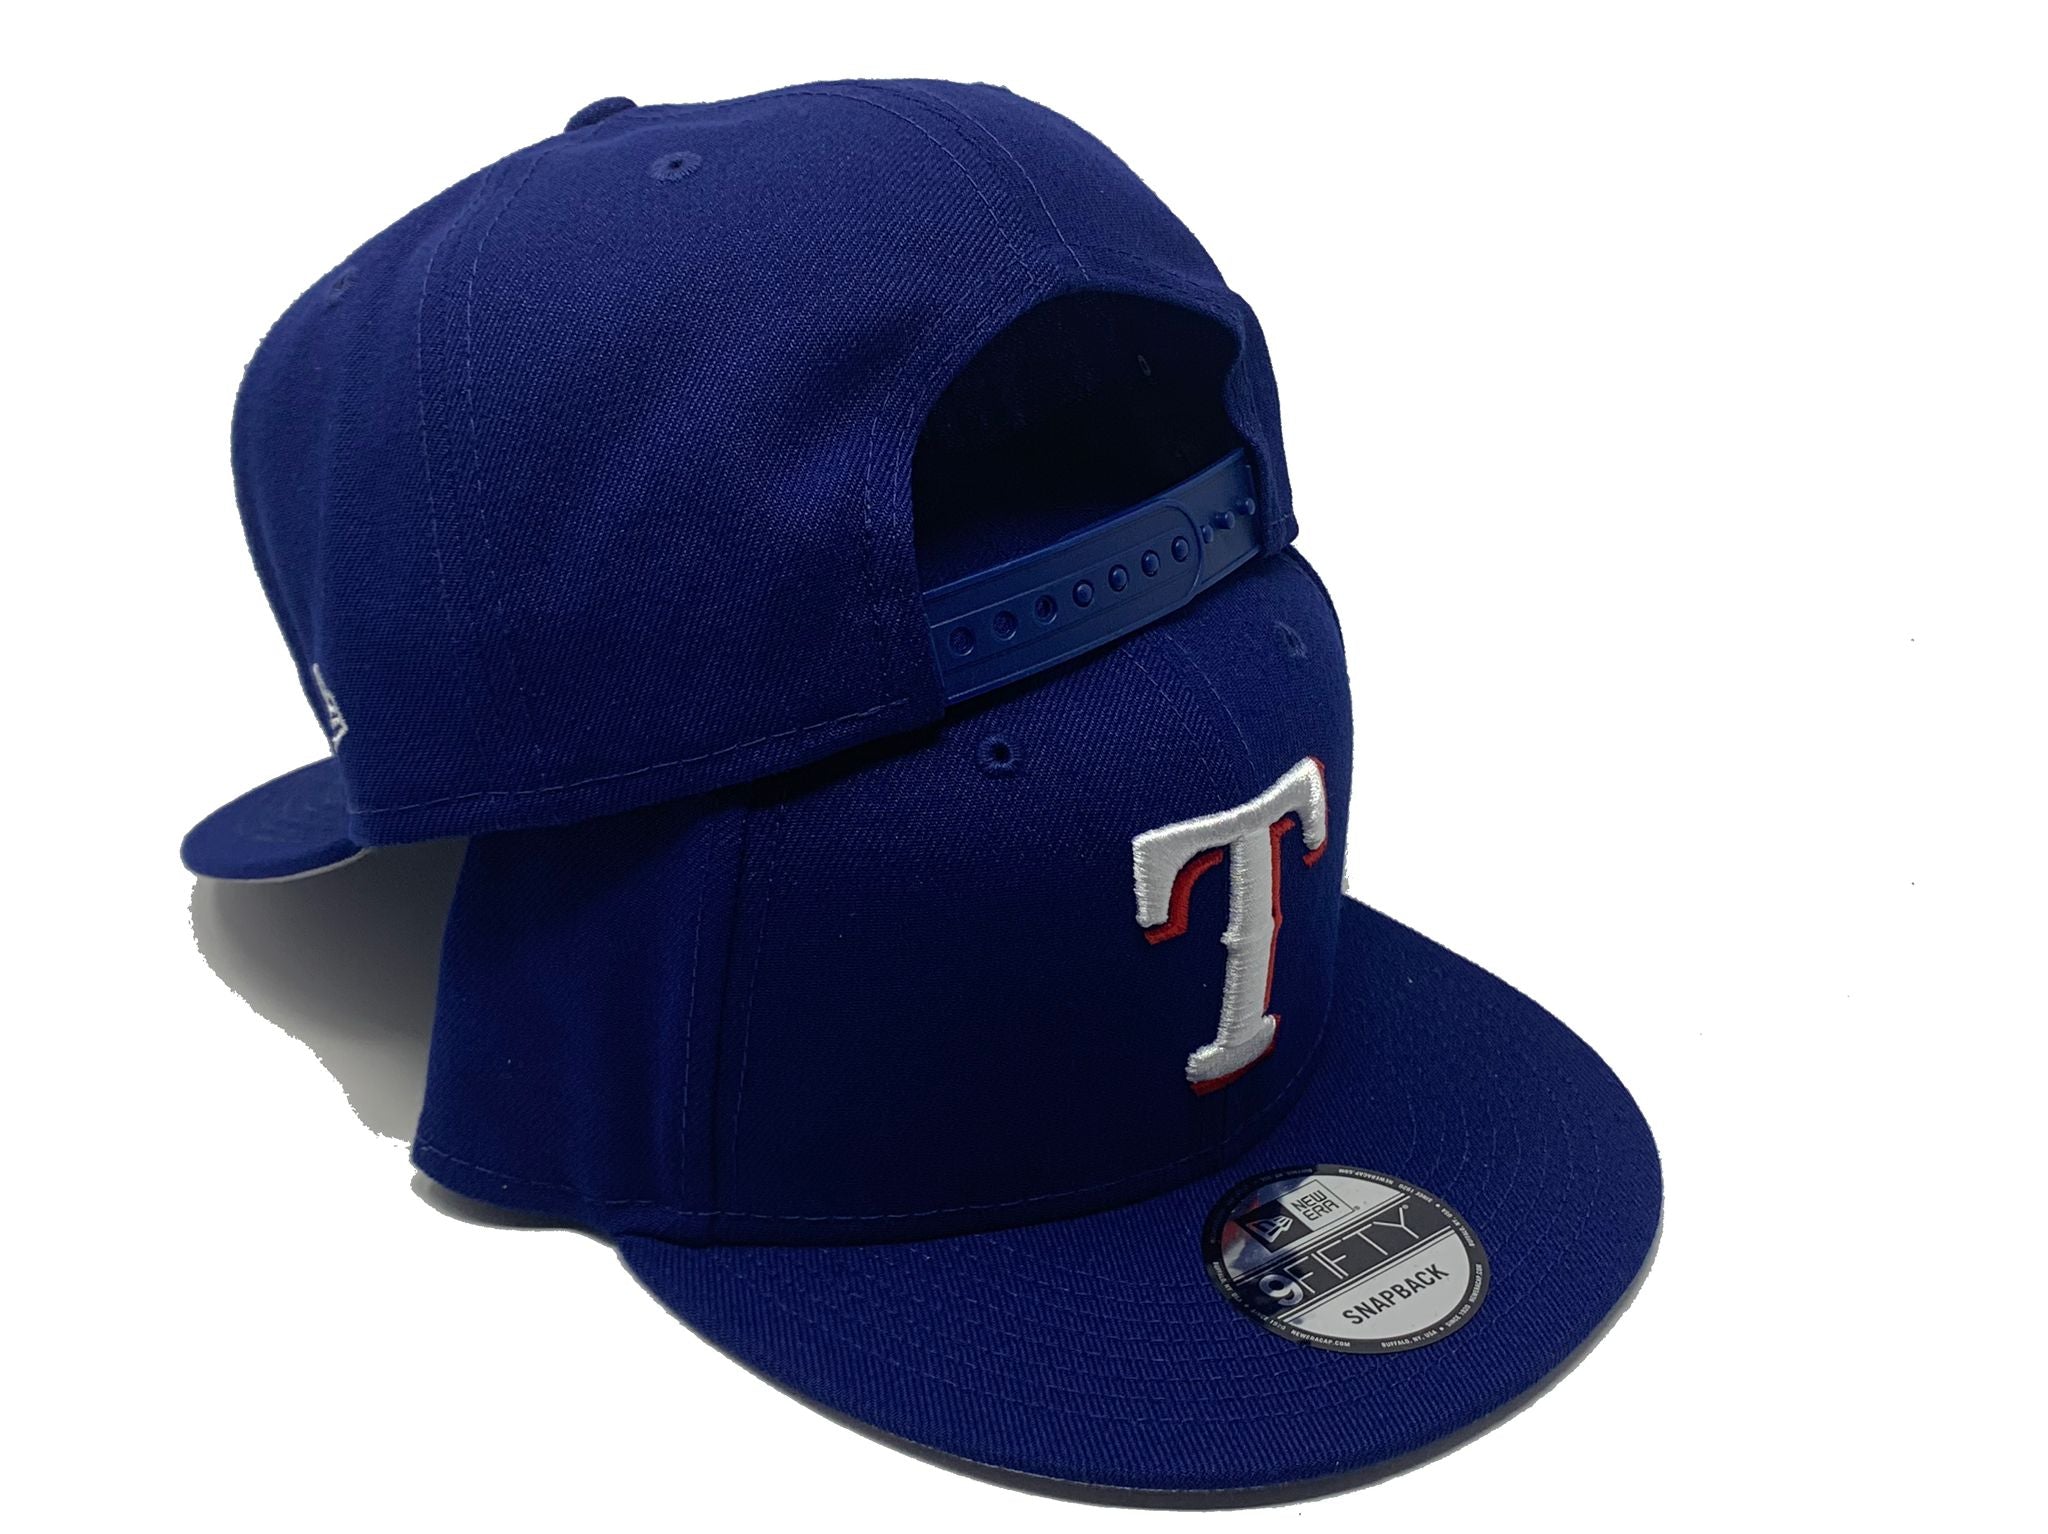 Official Texas Rangers Baseball Hats, Rangers Caps, Rangers Hat, Beanies